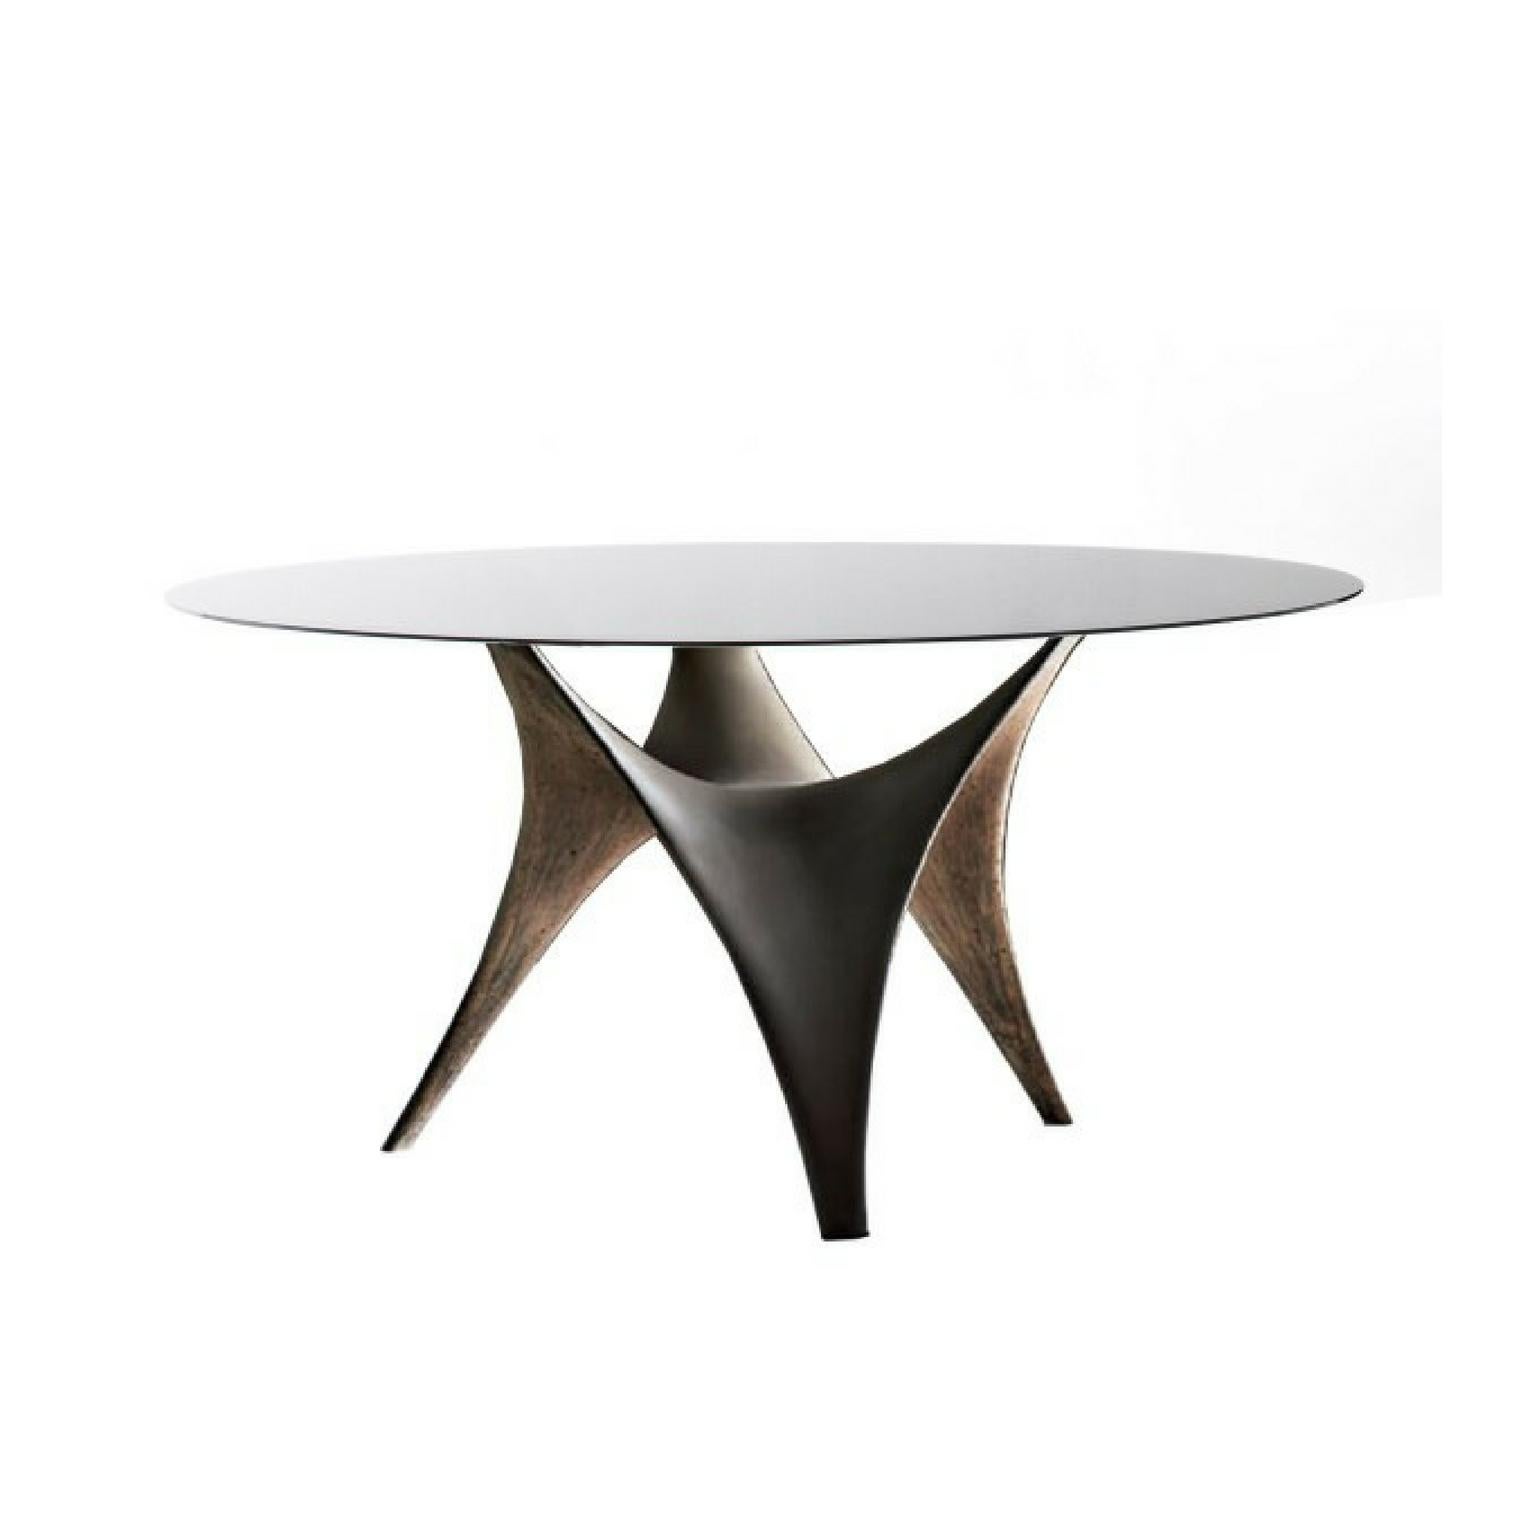 Der Tisch Arc verkörpert die innovativen Konzepte, die ihn auszeichnen. Die Form des Sockels ist von den derzeit im modernen Bauwesen verwendeten Technostrukturen inspiriert: ein neuer 